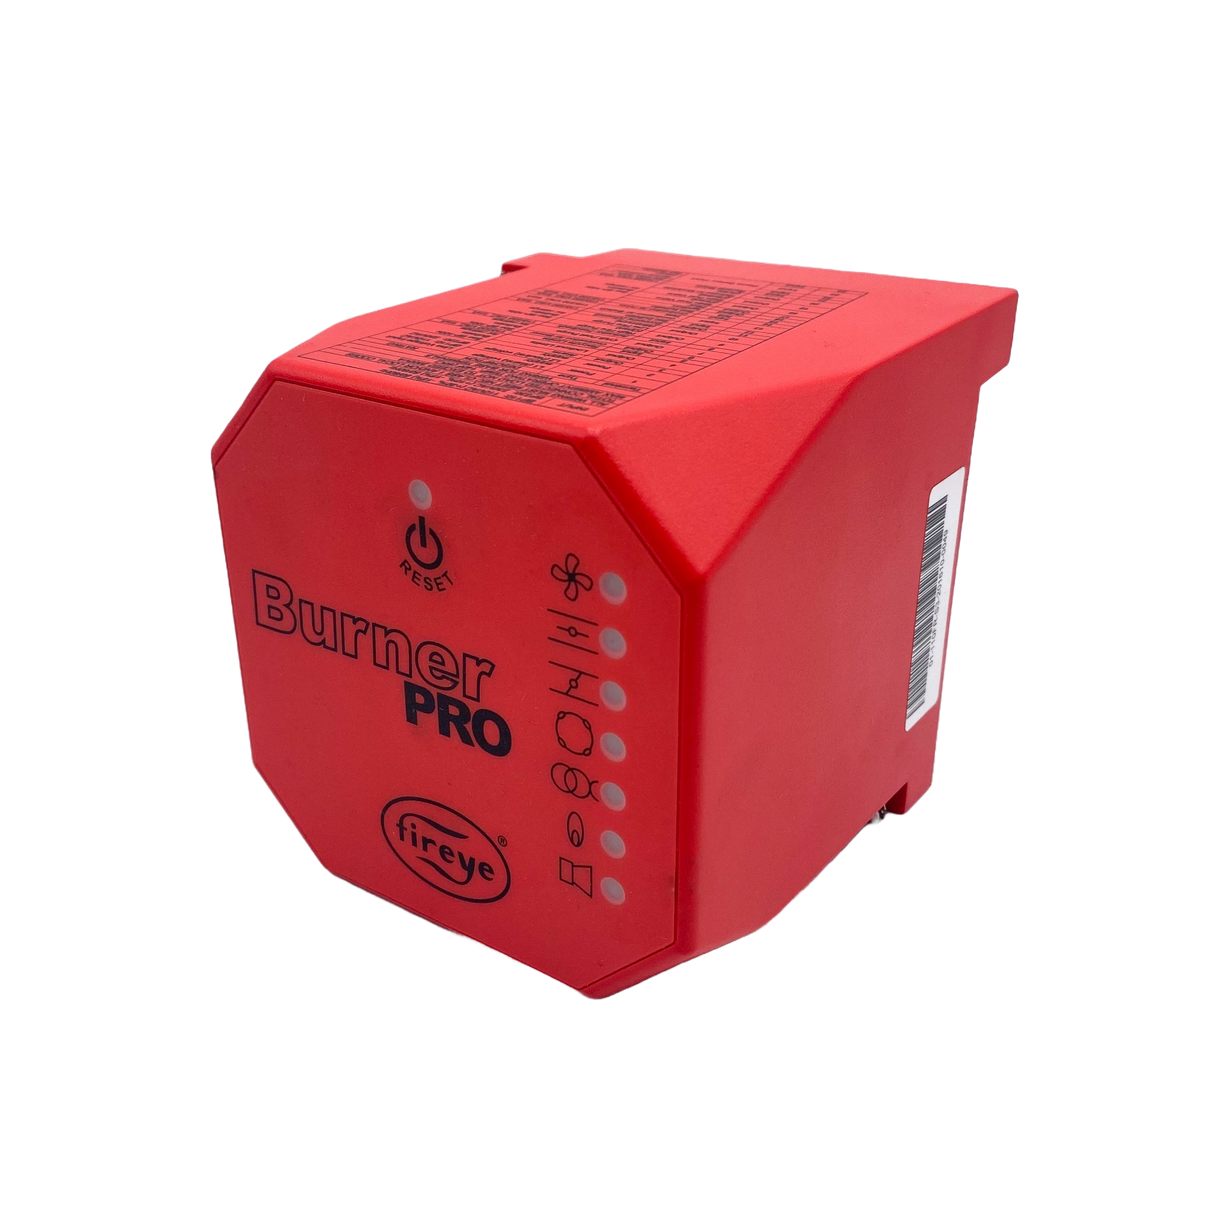 Intelligente Flammenschutz-Steuerbox Fireye BurnerPRO – direkter Ersatz für Honeywell TMG 740-3 und Siemens LFL-Modelle